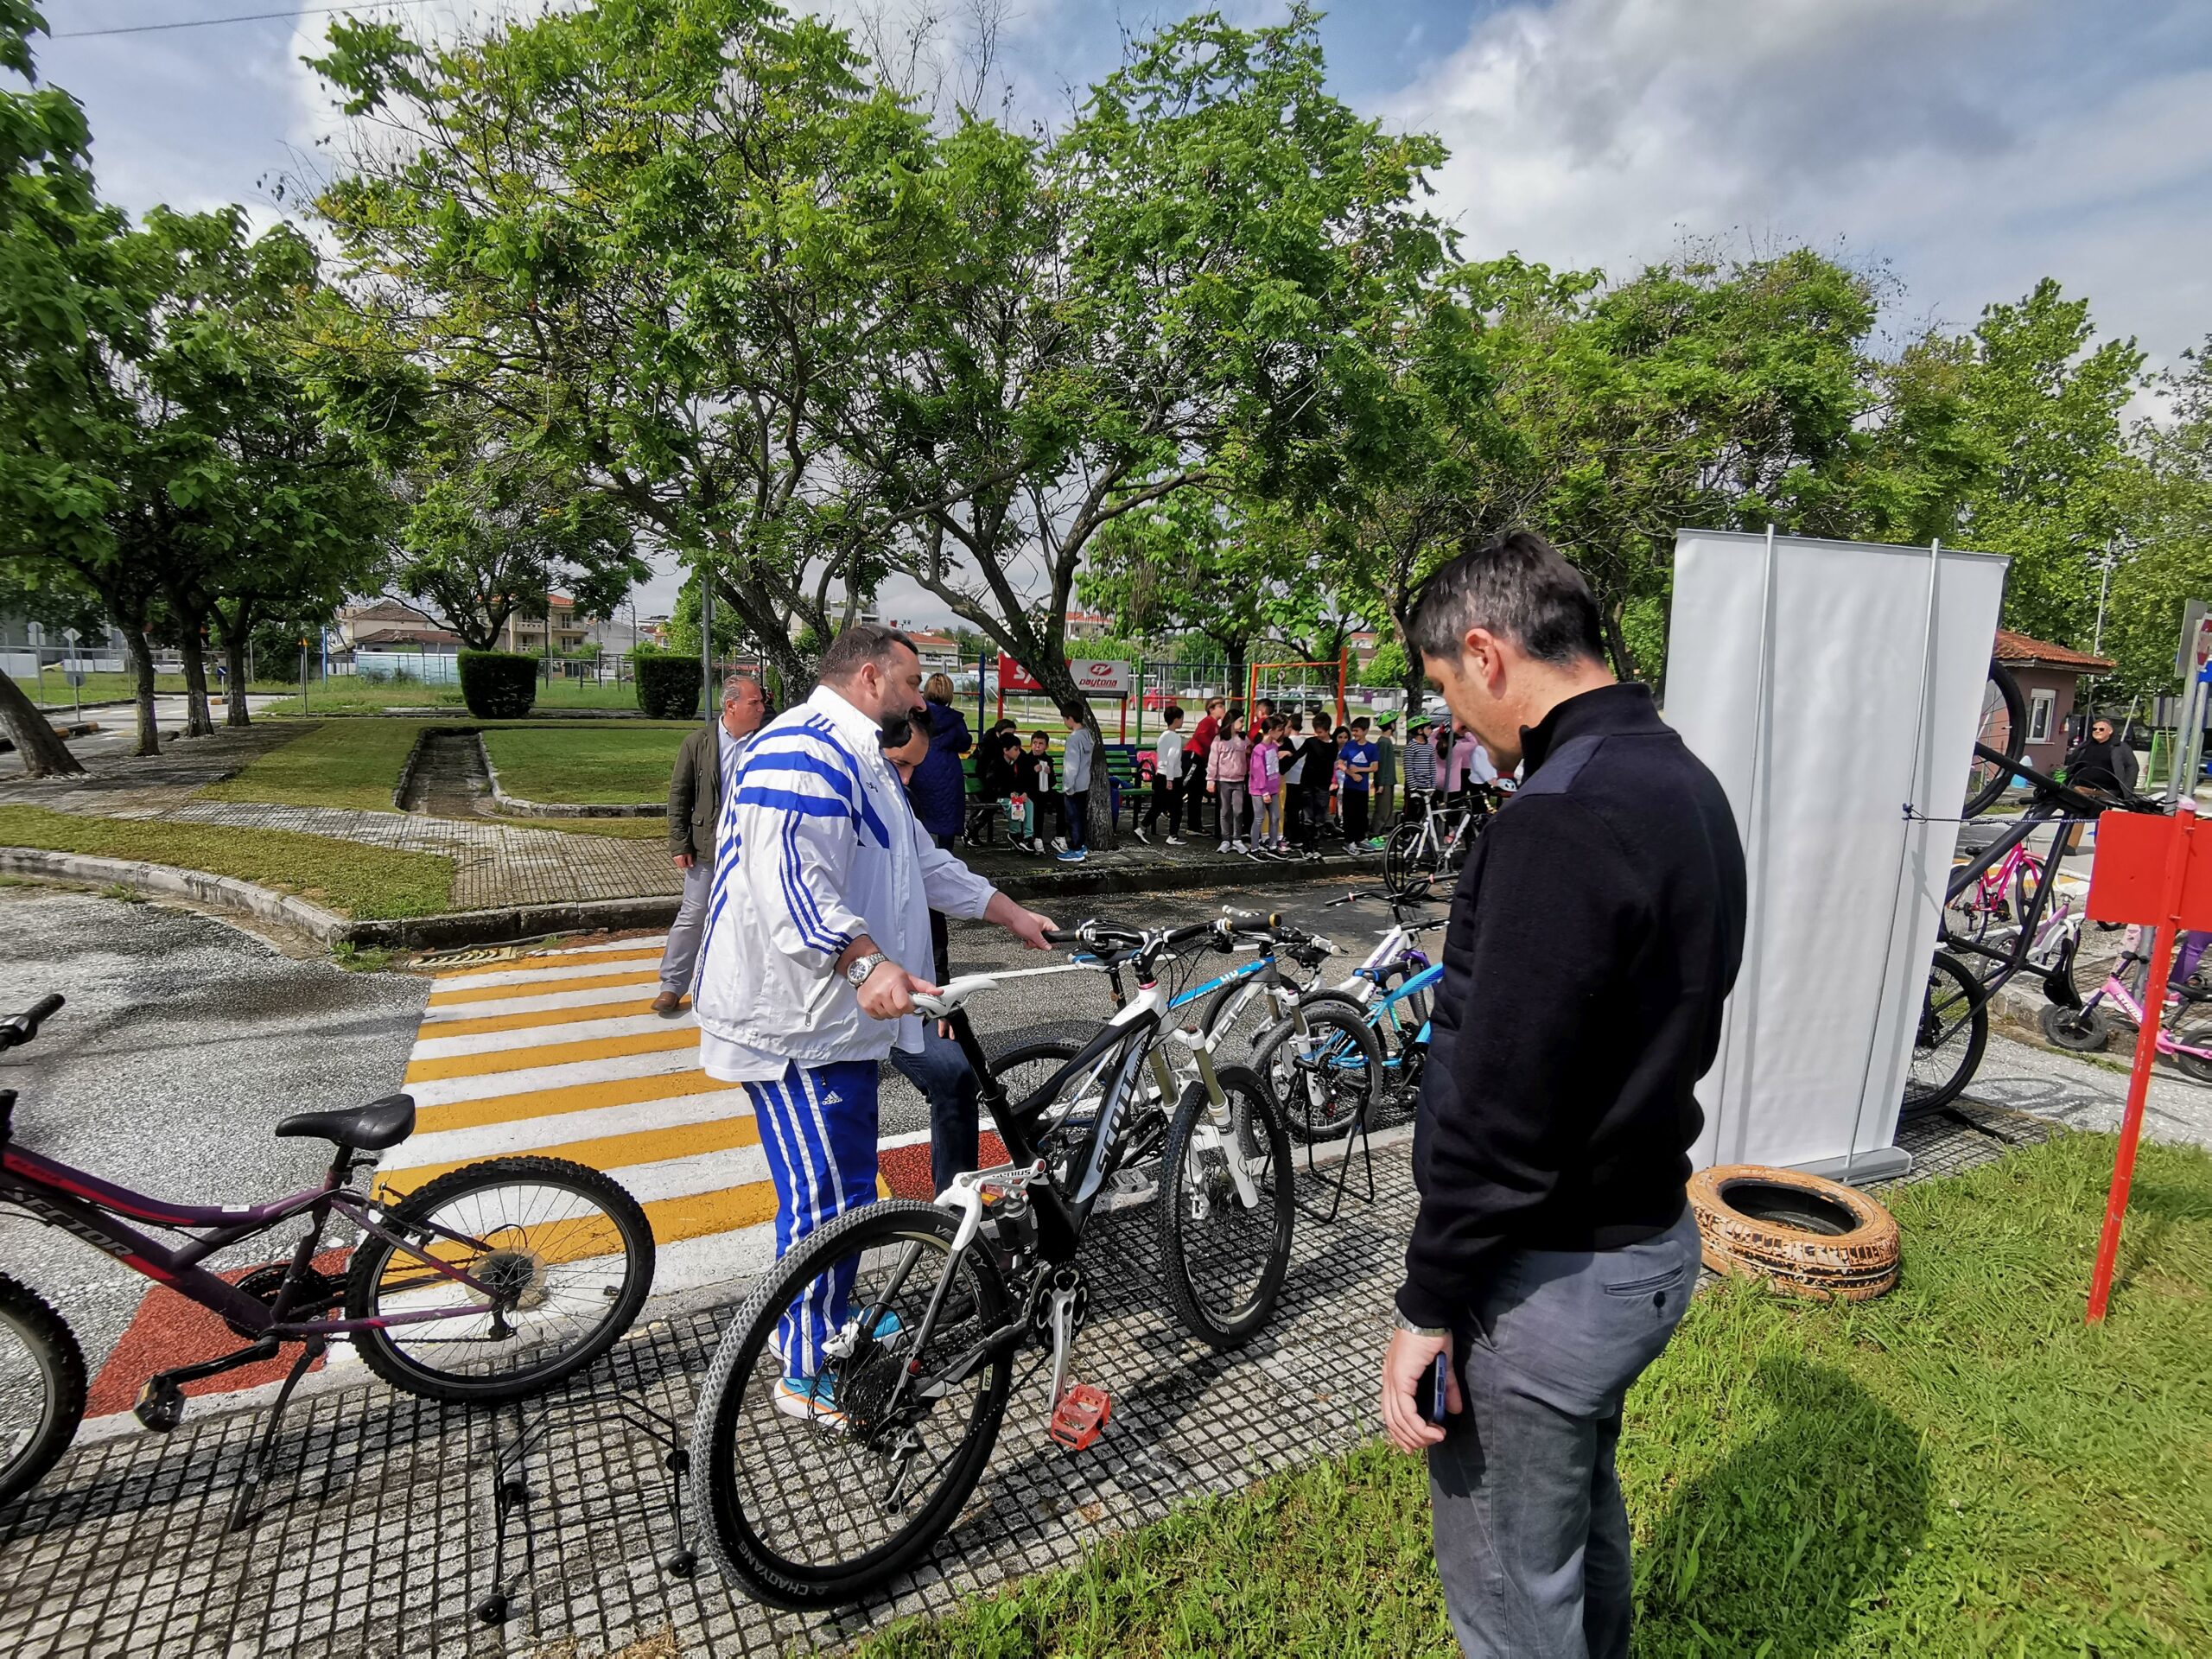 Δήμος Τρικκαίων: Το ποδήλατο ως καθημερινότητα και ως Ολυμπιακό άθλημα στο πάρκο κυκλοφοριακής αγωγής